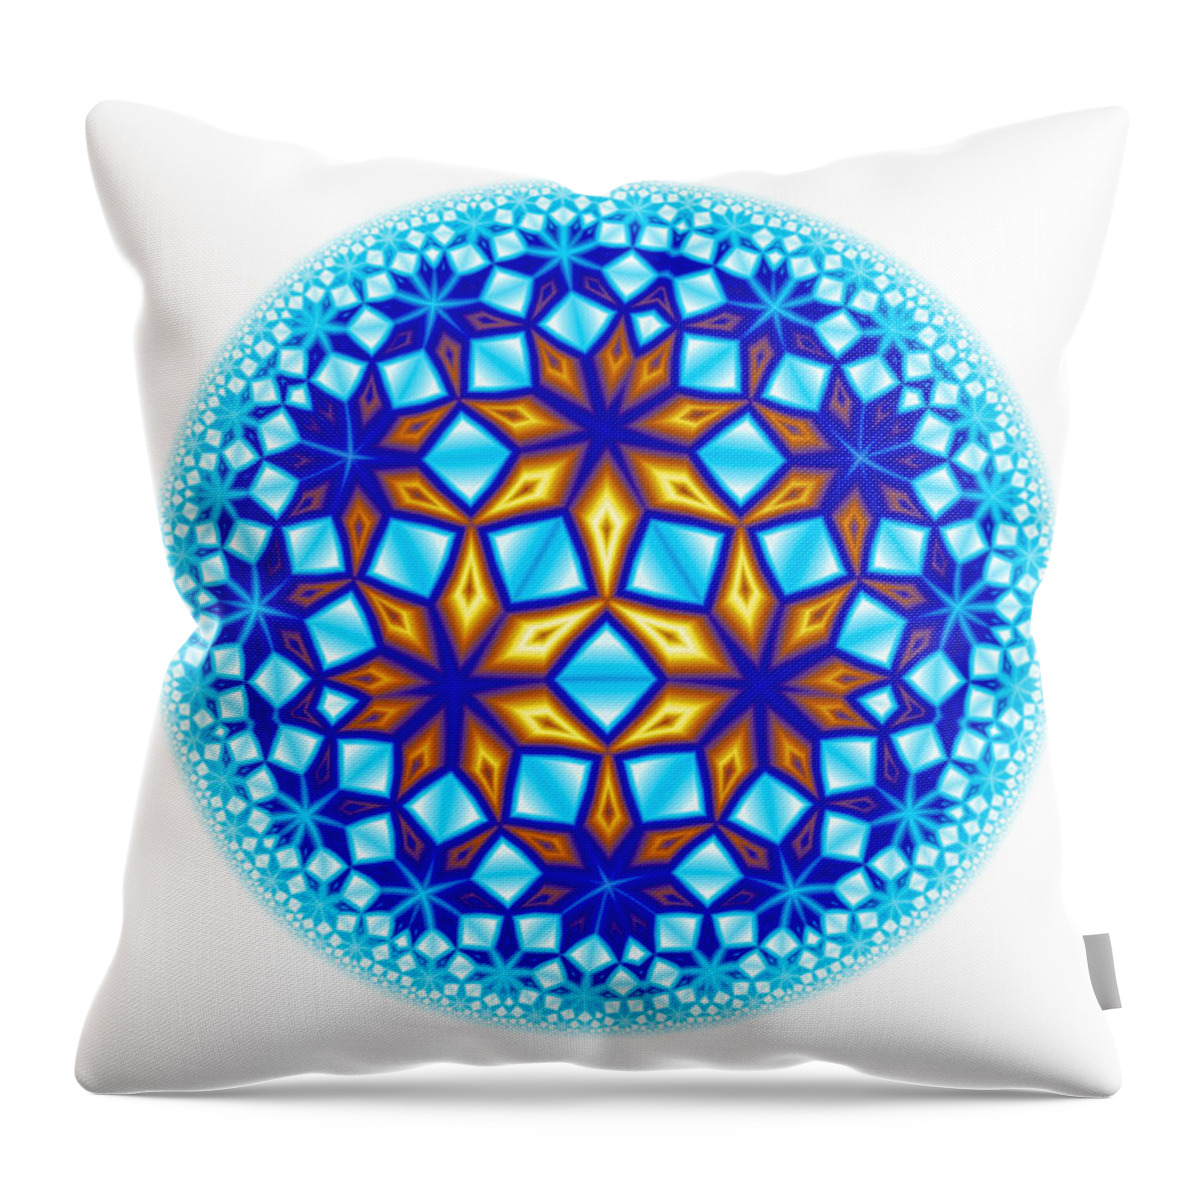 Mandala Throw Pillow featuring the digital art Fractal Escheresque Winter Mandala 7 by Hakon Soreide